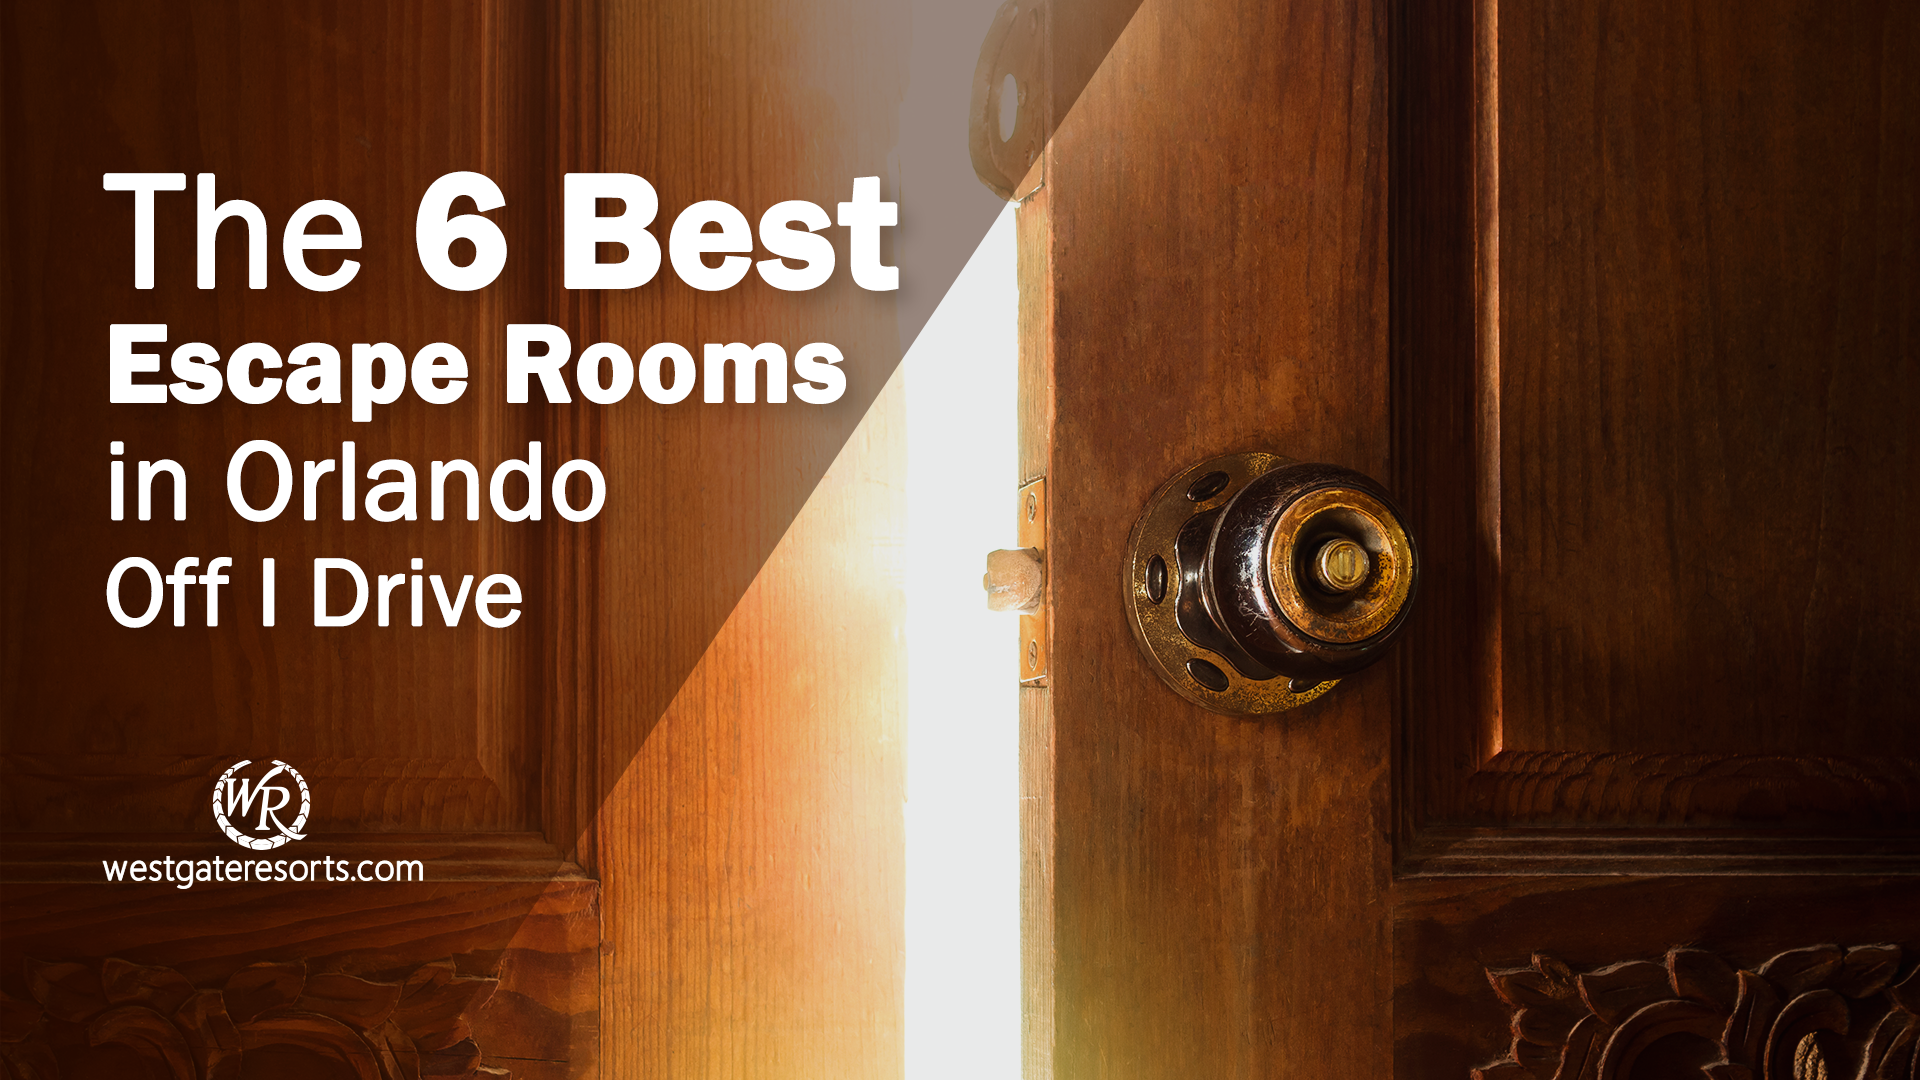 Las 6 mejores salas de escape en Orlando Off I Drive | Salas de escape Orlando, Florida | Westgate Resorts Orlando